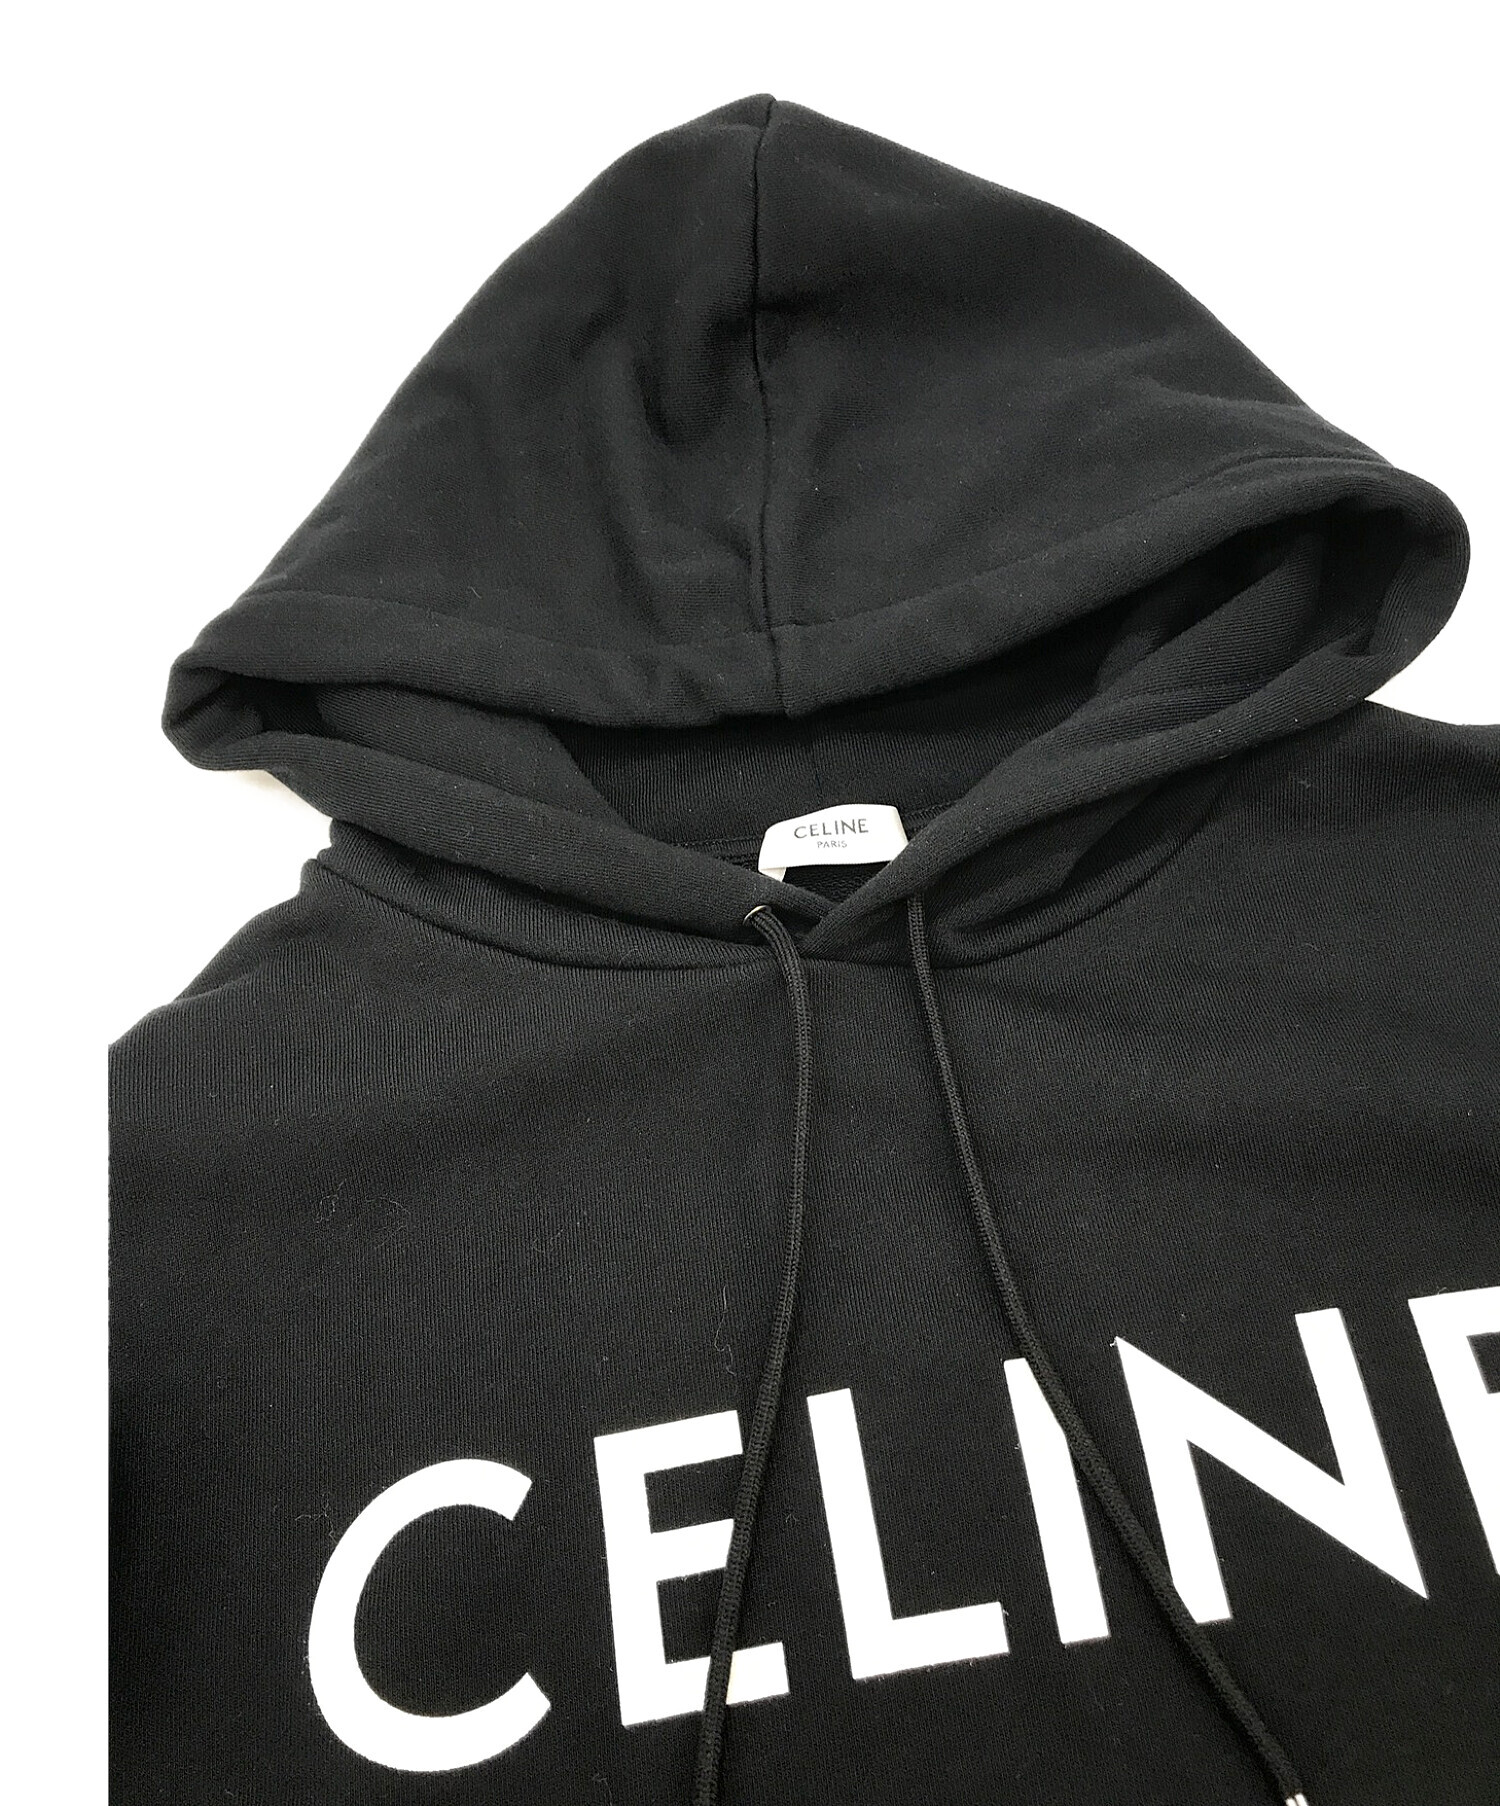 CELINE (セリーヌ) Loose Sweatshirt / スウェットパーカー ブラック サイズ:L